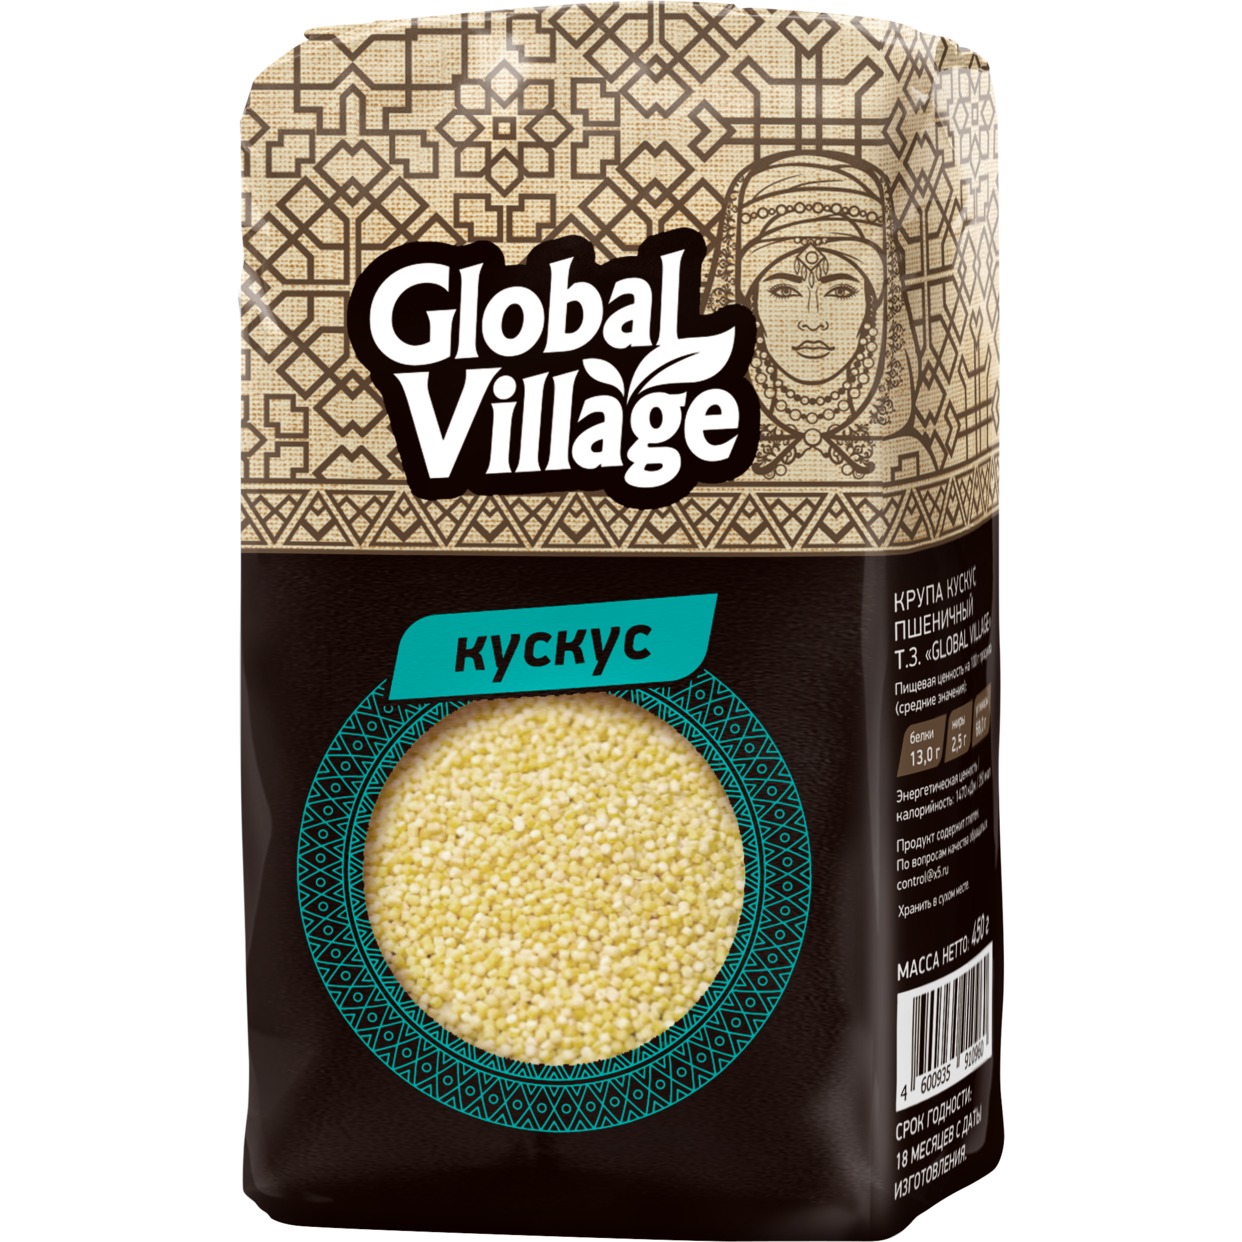 Крупа кускус пшеничный фасованный «Global Village» 450г по акции в Пятерочке